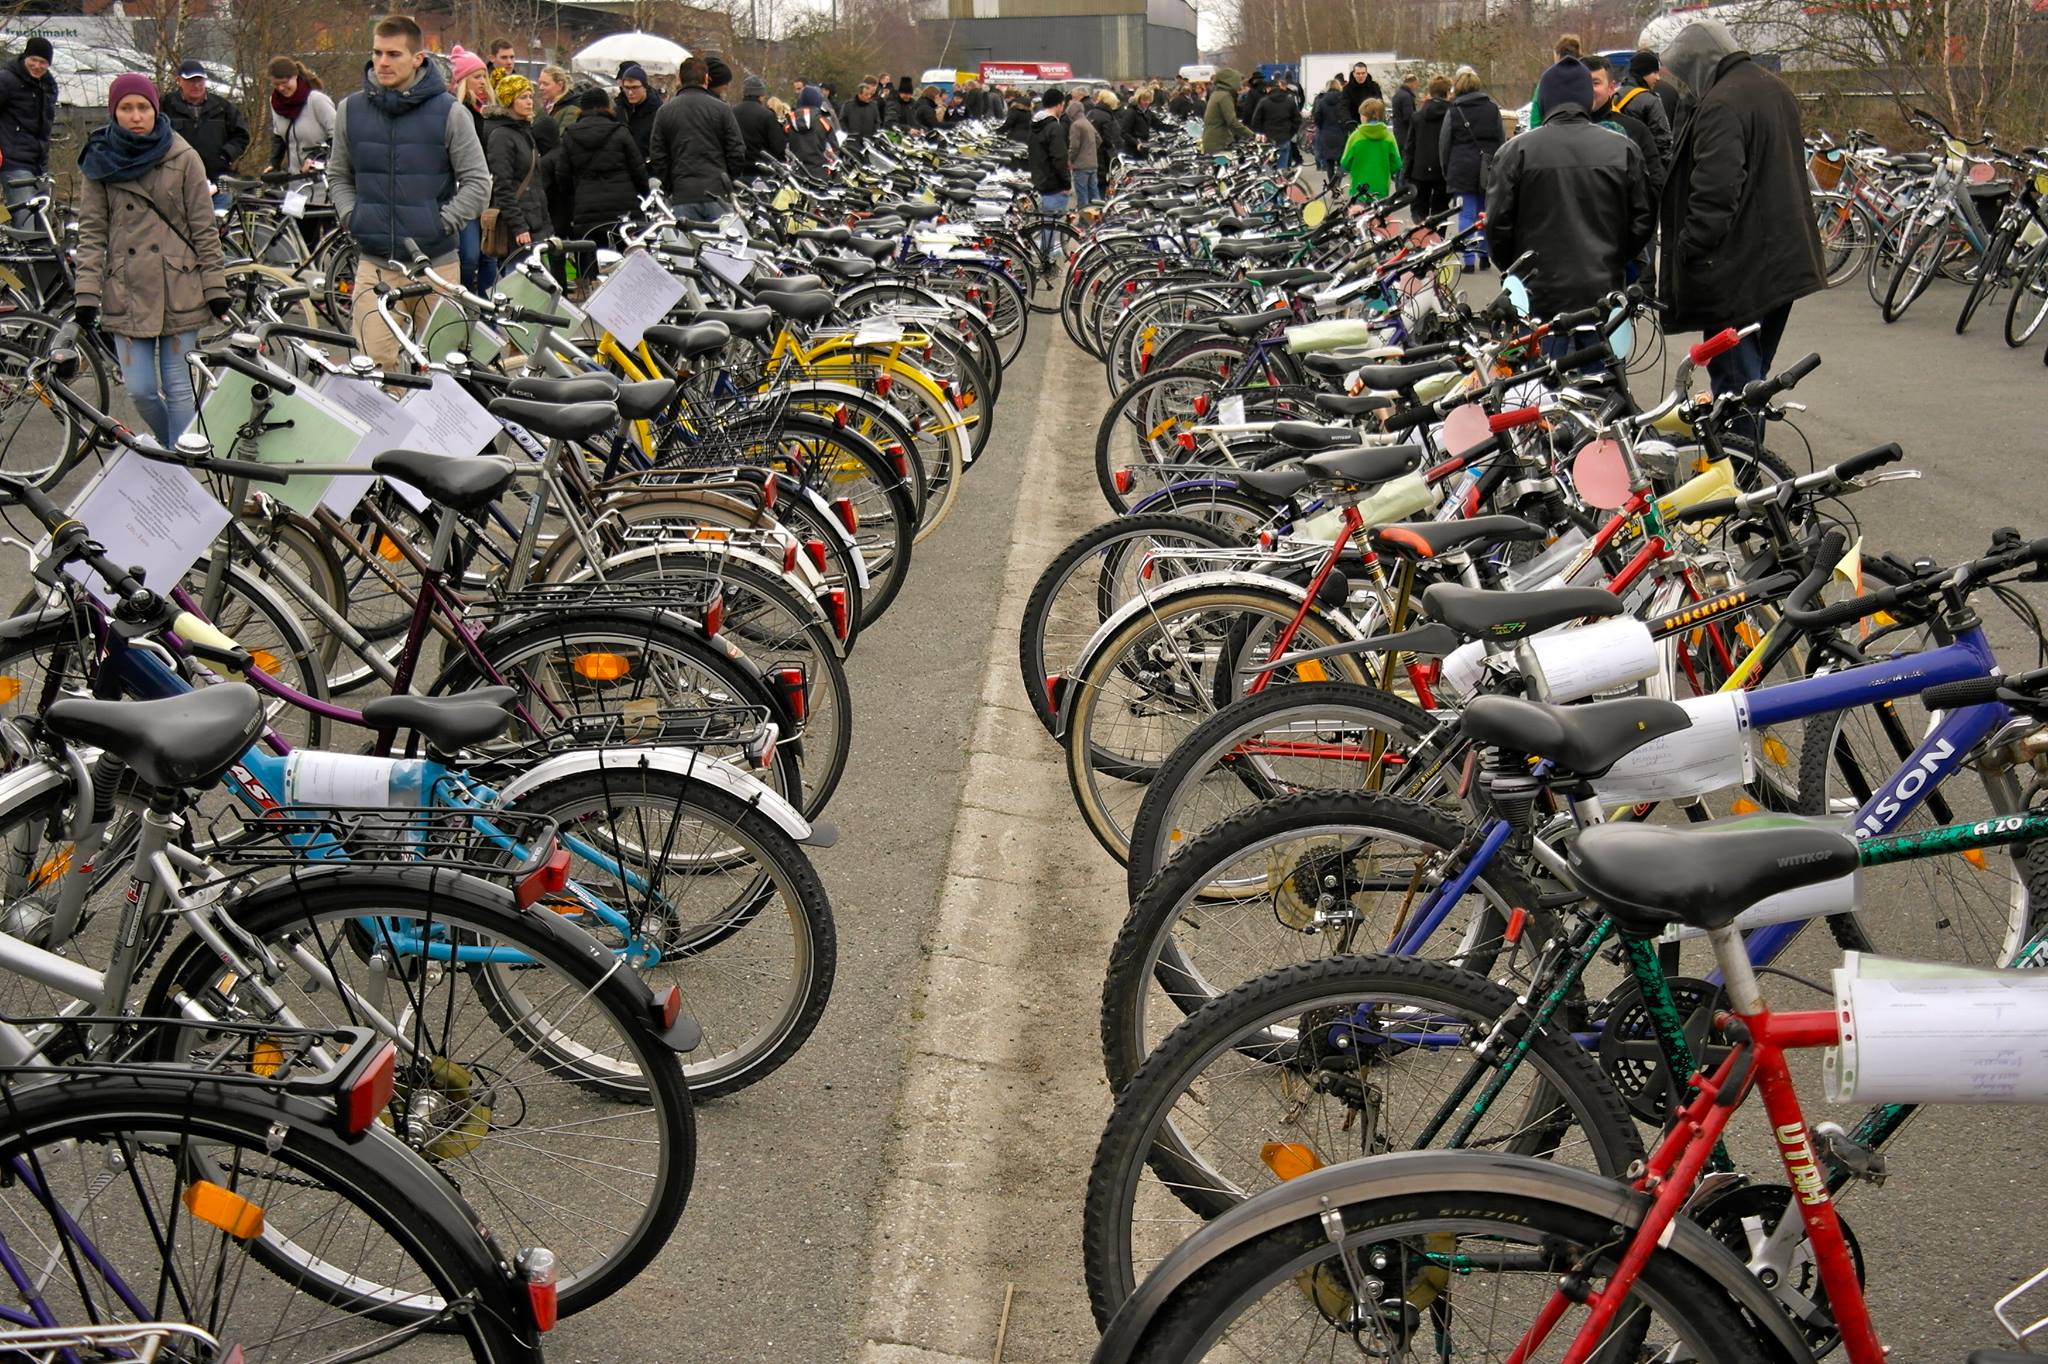 Du suchst ein Bike? Auf dem Fahrradmarkt gibts 700 gebrauchte Räder!